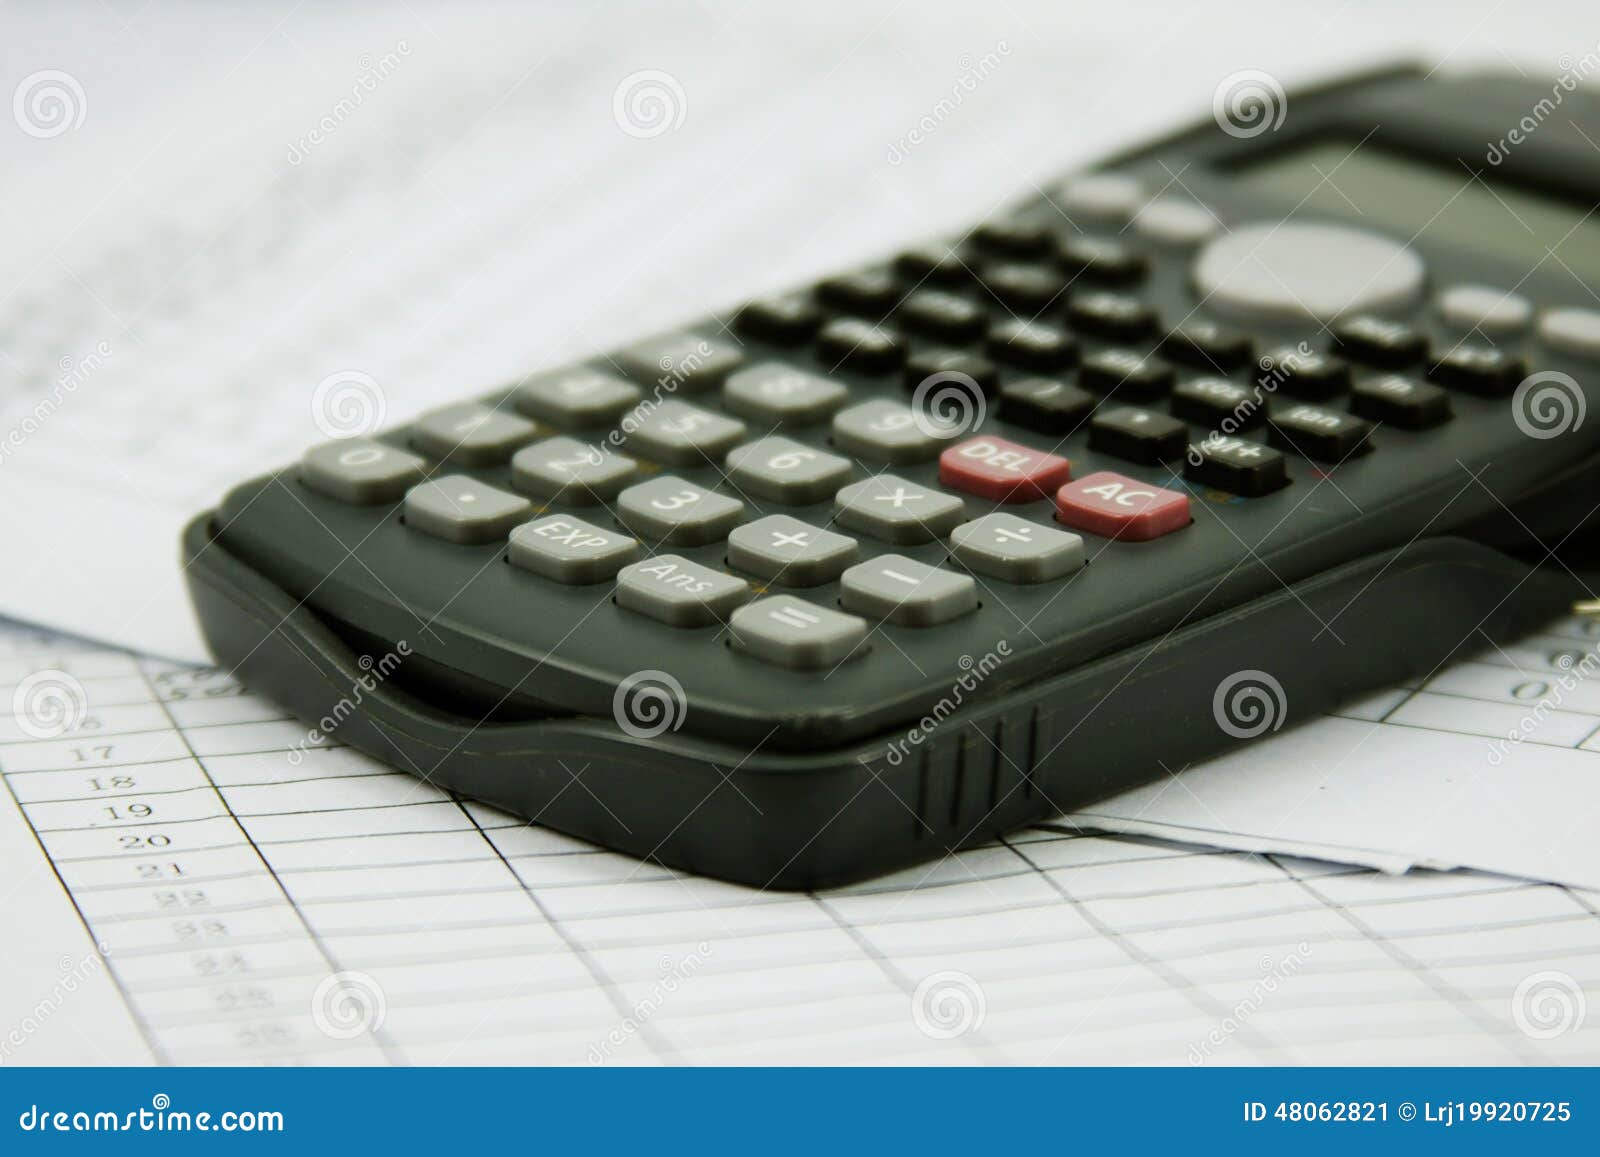 Calculatrice financière image stock. Image du clavier - 48062821